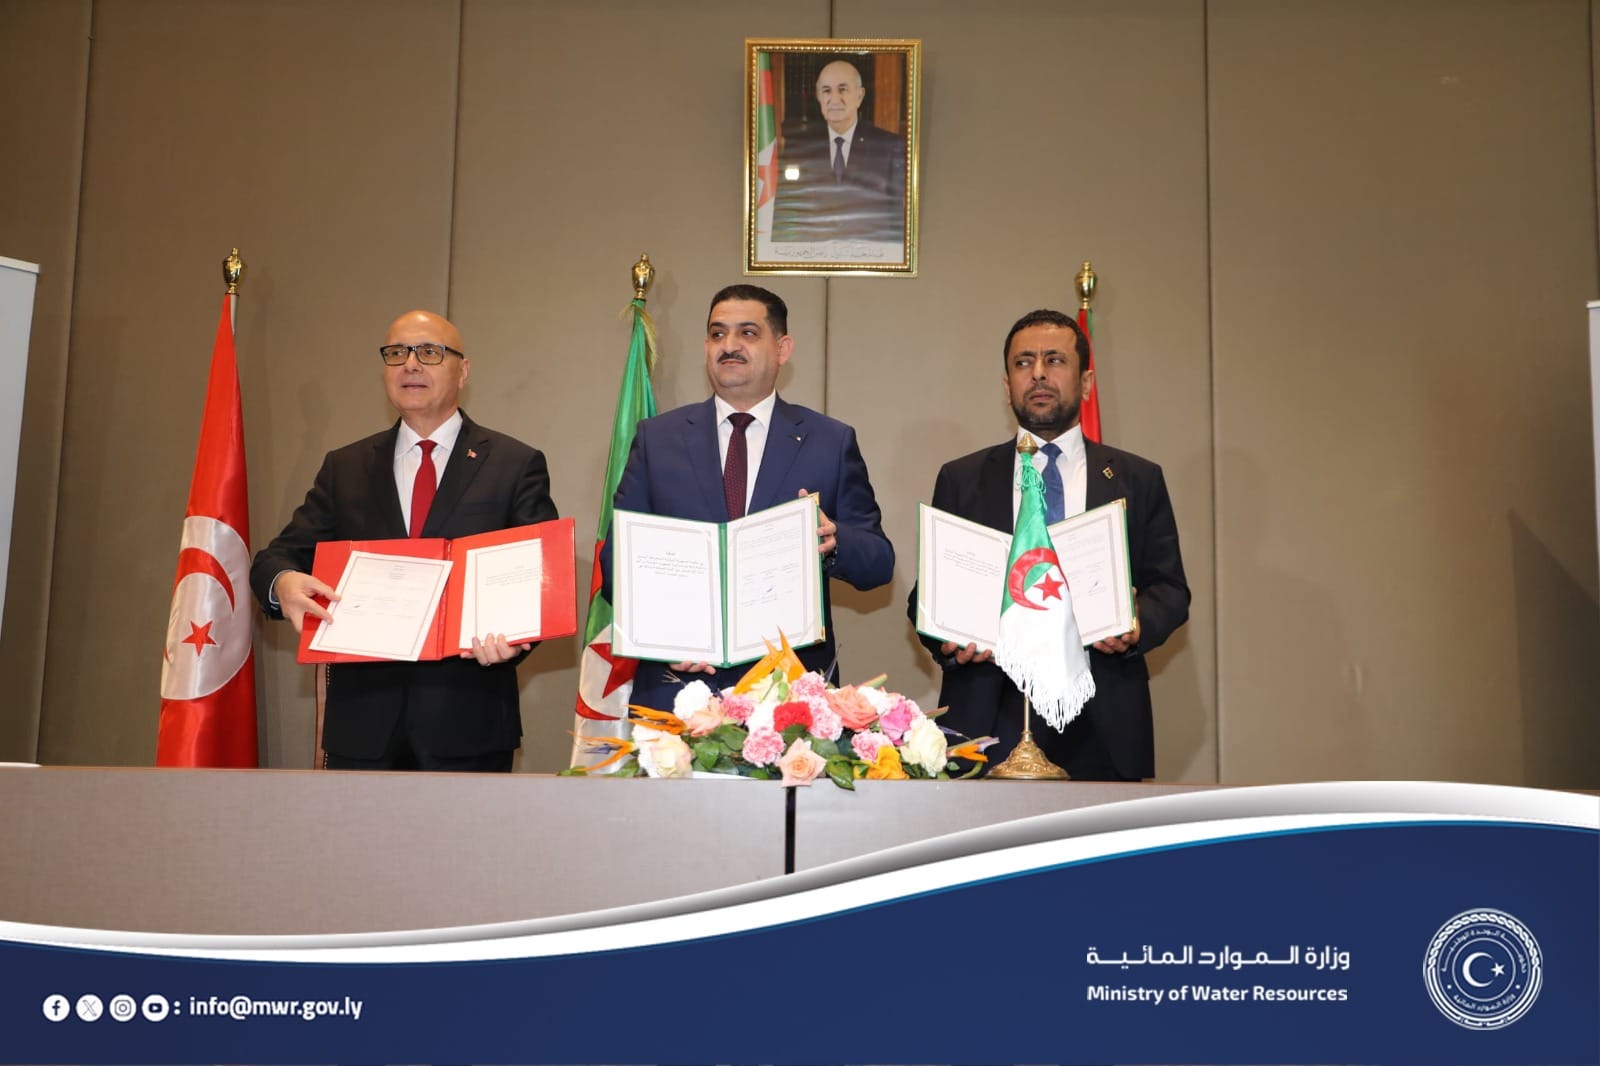 ليبيا وتونس والجزائر يوقعون اتفاقية لإدارة المياه الجوفية المشتركة